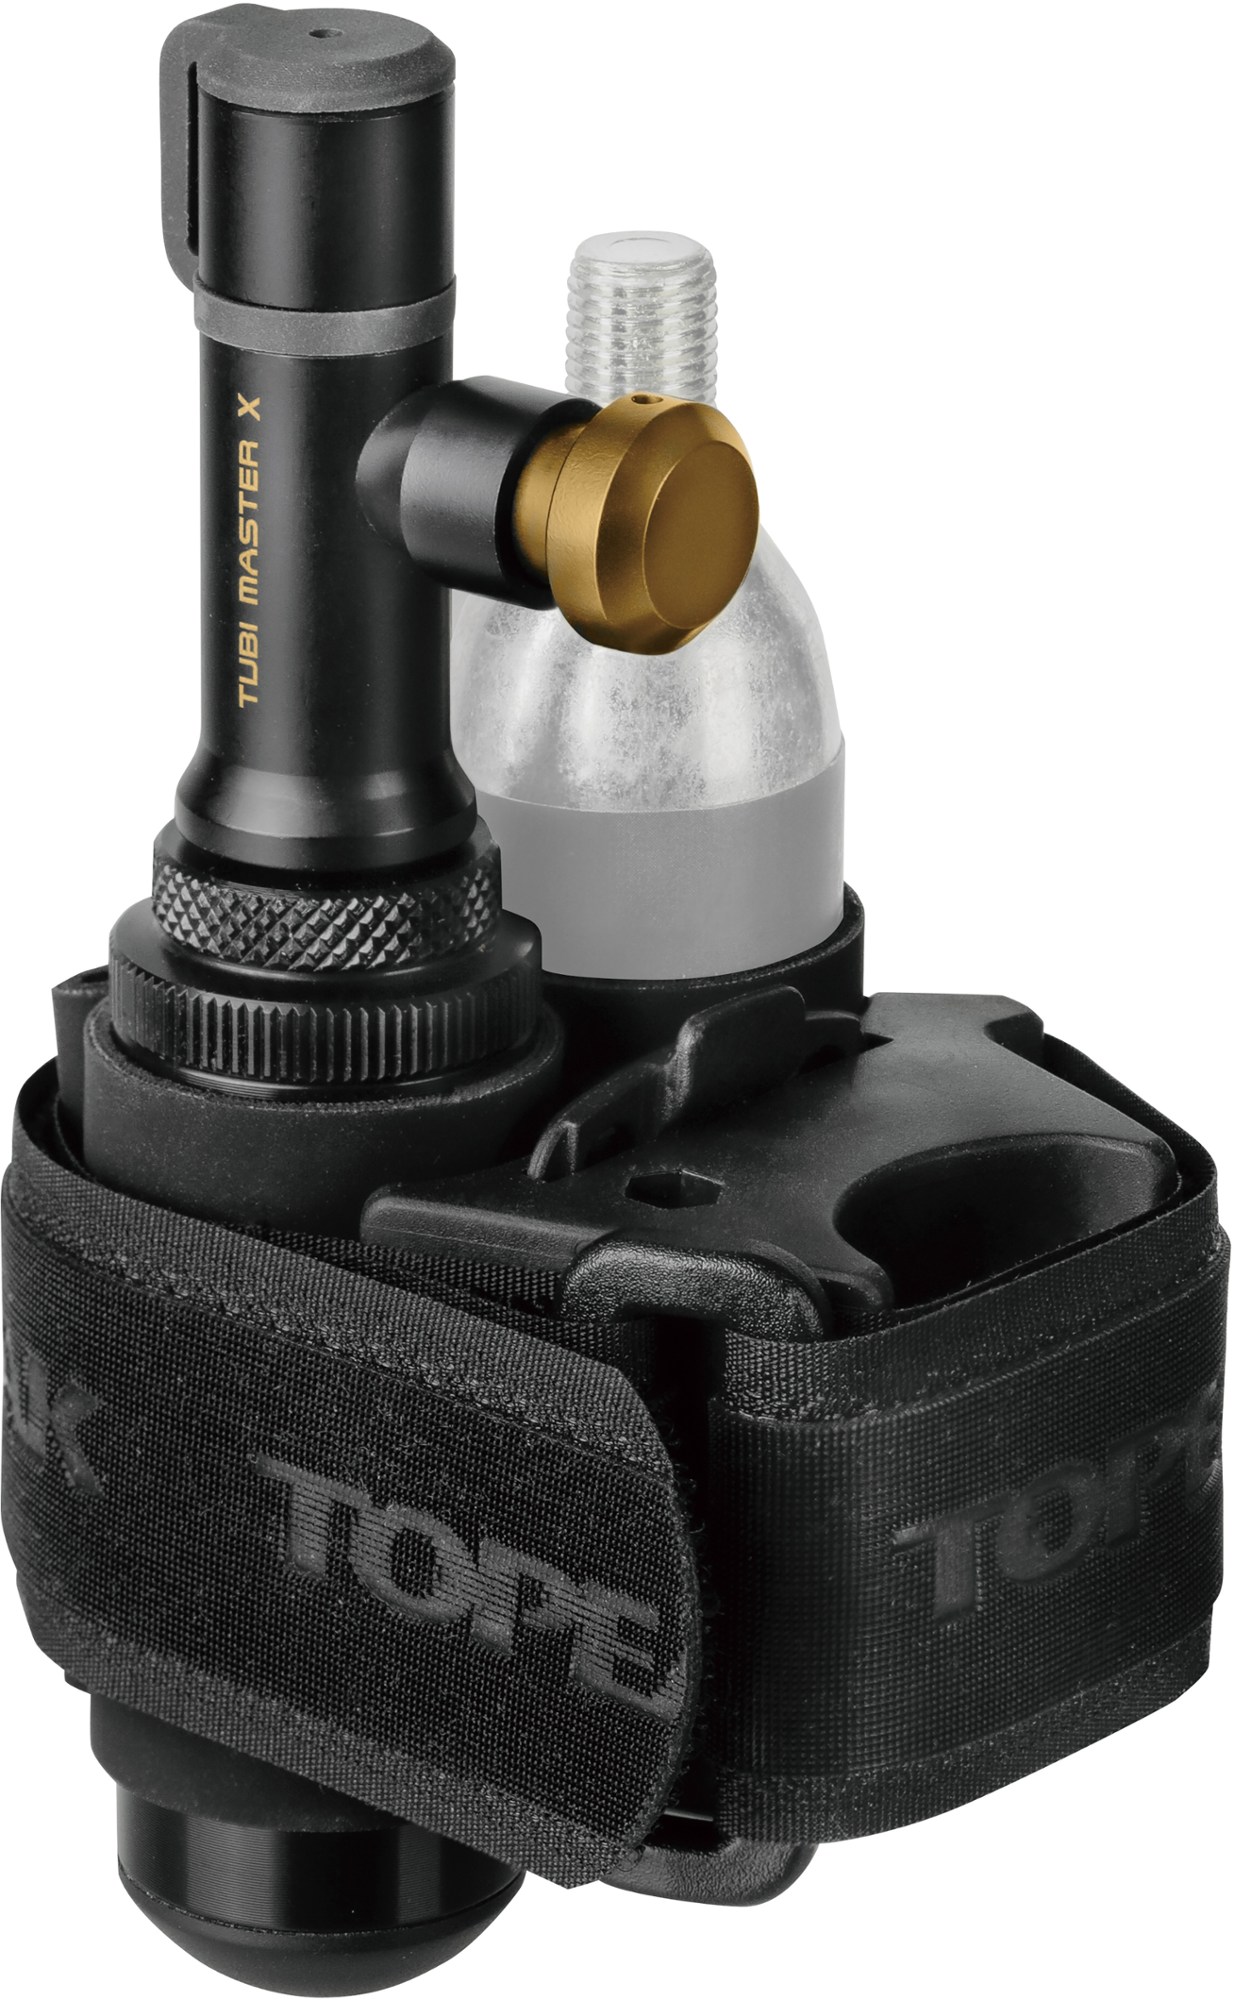 Инструмент Tubi Master X Topeak, черный комплект бесплатной лазерной головки co2 лазерная режущая головка co2 отражающее зеркало si 25 мм фокусная линза 20 мм для лазерной резки co2 кр